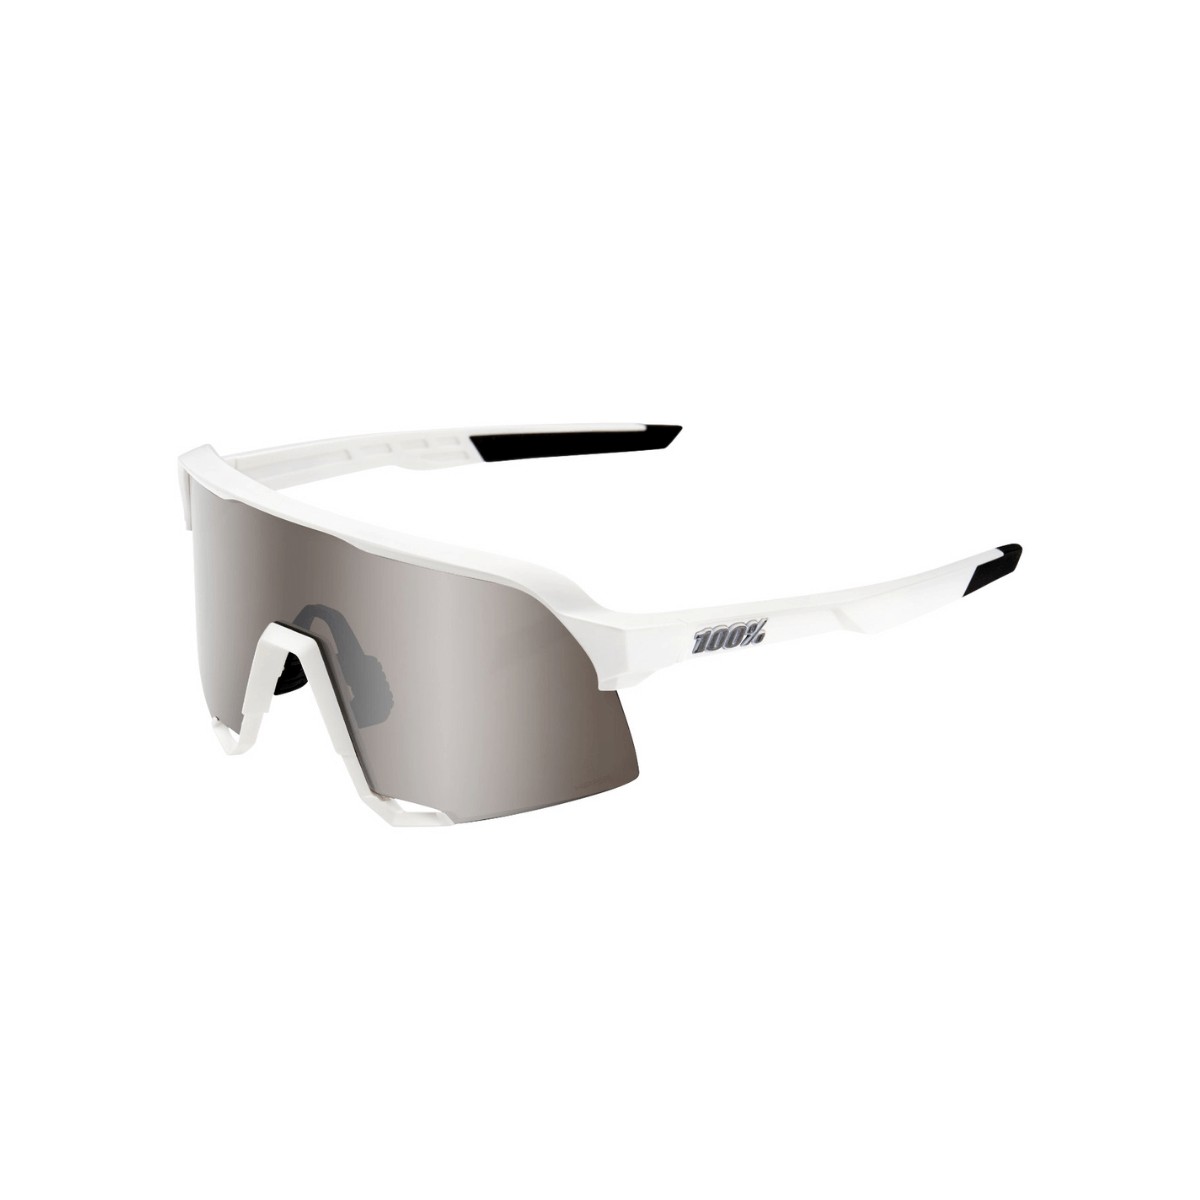 Image of Brille 100% S3 Mattweiß Hyper Silver Gläser